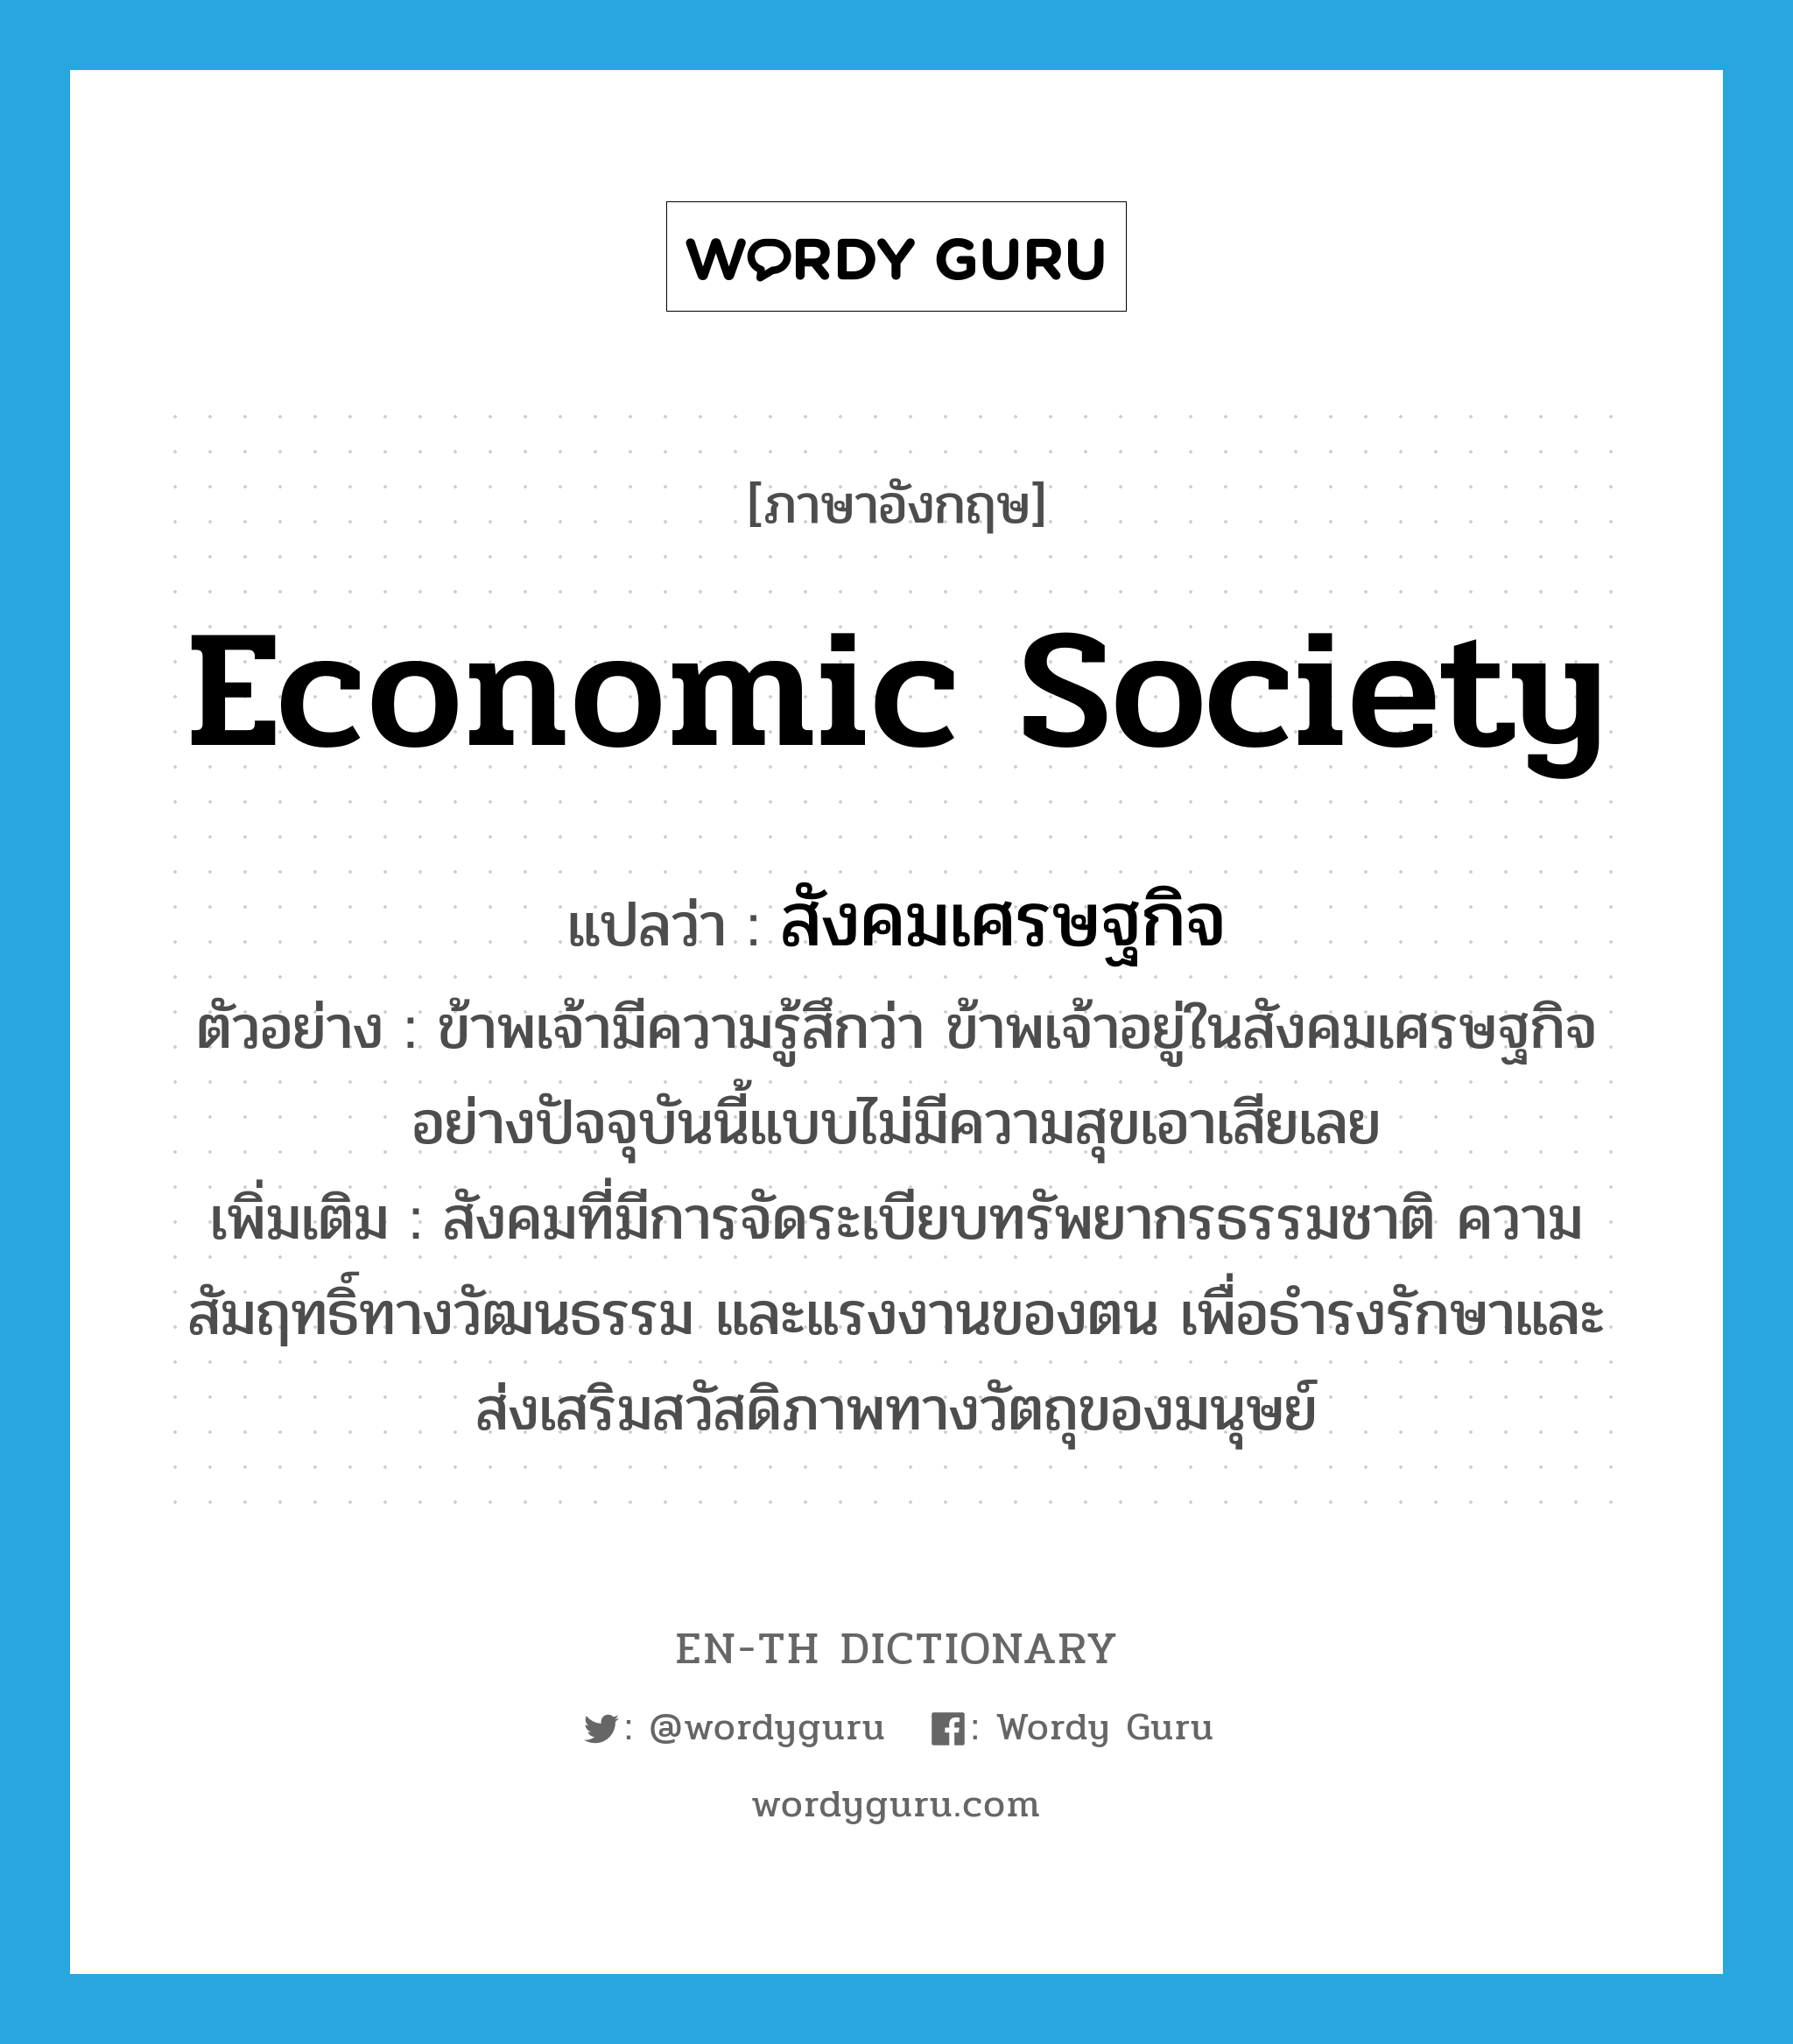 economic society แปลว่า?, คำศัพท์ภาษาอังกฤษ economic society แปลว่า สังคมเศรษฐกิจ ประเภท N ตัวอย่าง ข้าพเจ้ามีความรู้สึกว่า ข้าพเจ้าอยู่ในสังคมเศรษฐกิจอย่างปัจจุบันนี้แบบไม่มีความสุขเอาเสียเลย เพิ่มเติม สังคมที่มีการจัดระเบียบทรัพยากรธรรมชาติ ความสัมฤทธิ์ทางวัฒนธรรม และแรงงานของตน เพื่อธำรงรักษาและส่งเสริมสวัสดิภาพทางวัตถุของมนุษย์ หมวด N